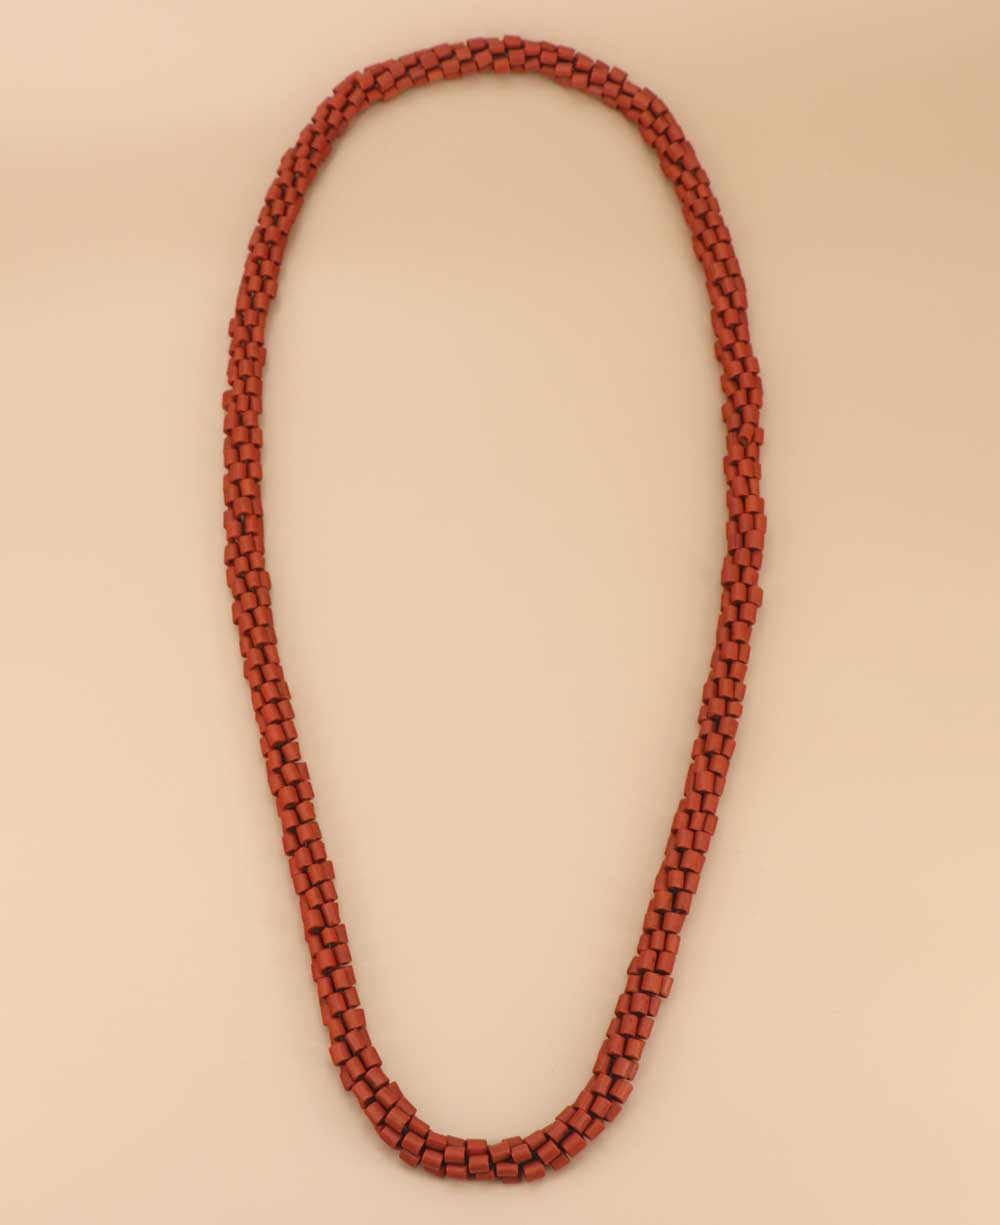 Rust orange Tibetan resin bead necklace